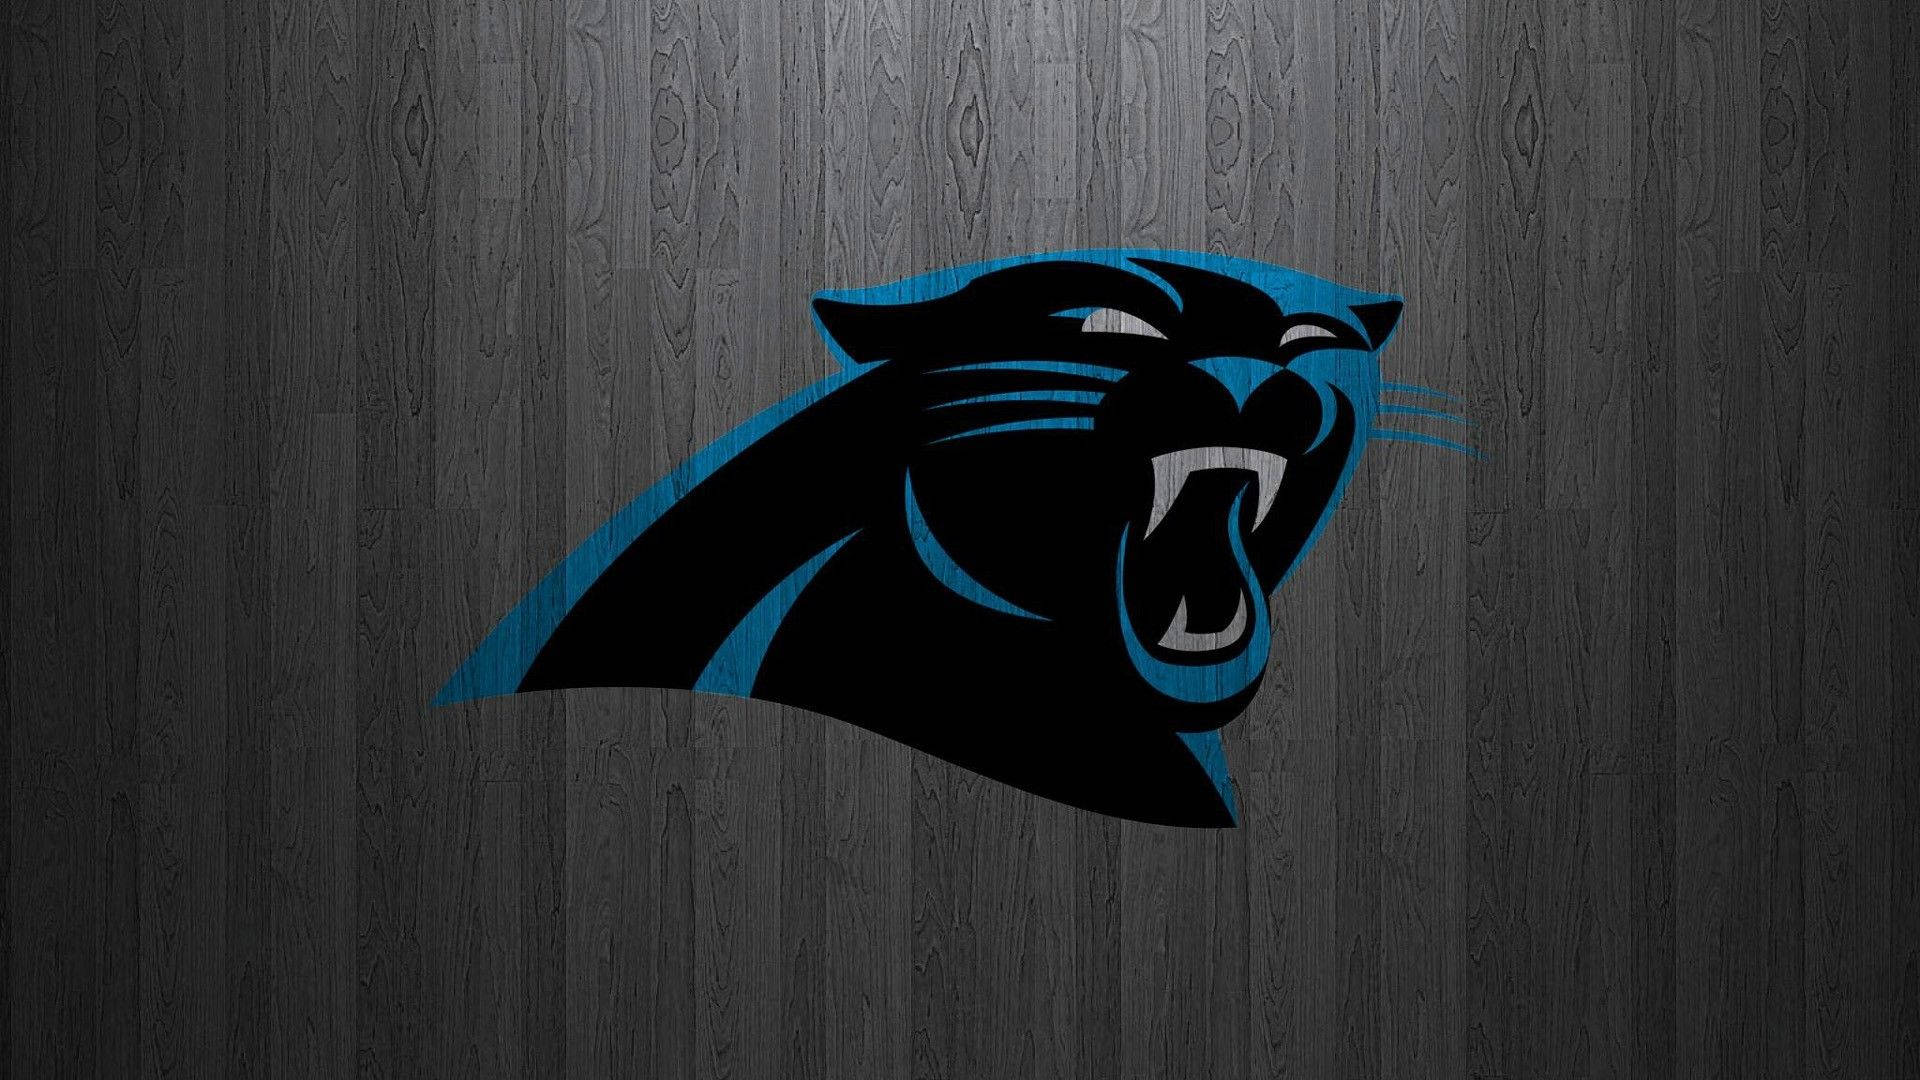 Carolina Panthers Logo On Wood Panels Wallpaper